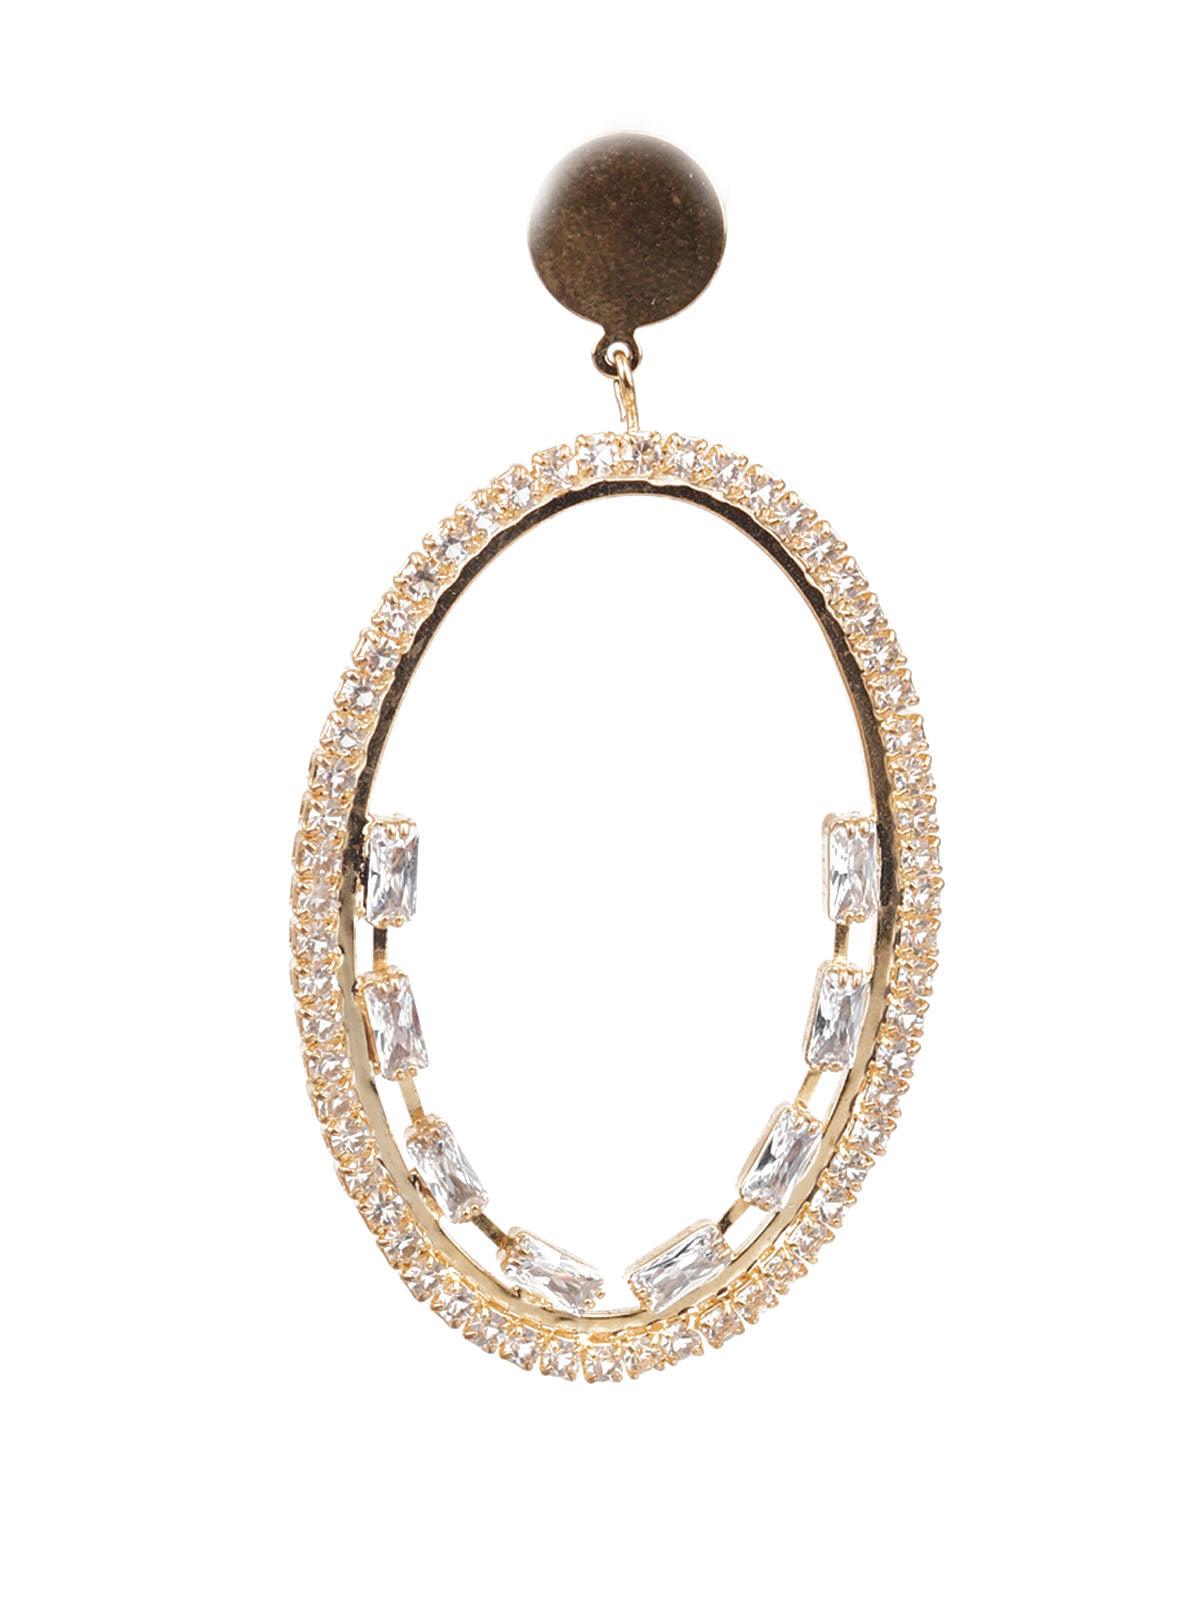 Women's Classy Gold Color Teardrop Earrings - Odette